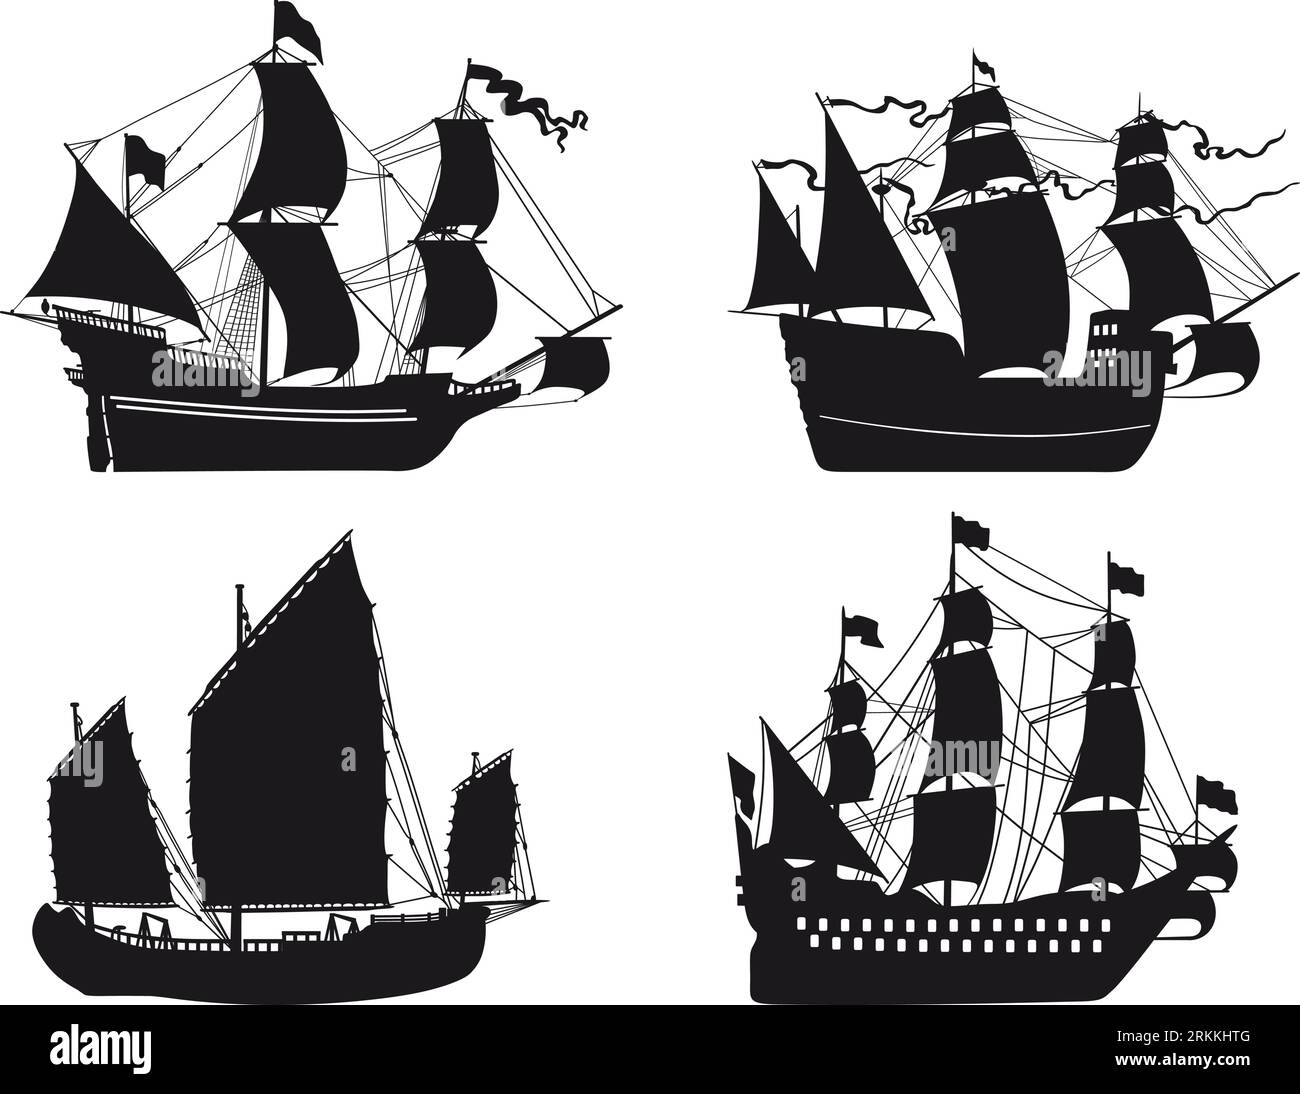 Detaillierte Vektorillustration von Holzschiffen in einem flachen Stil auf einem weißen Hintergrund. Frigate, Junk, Segelboot. Stock Vektor